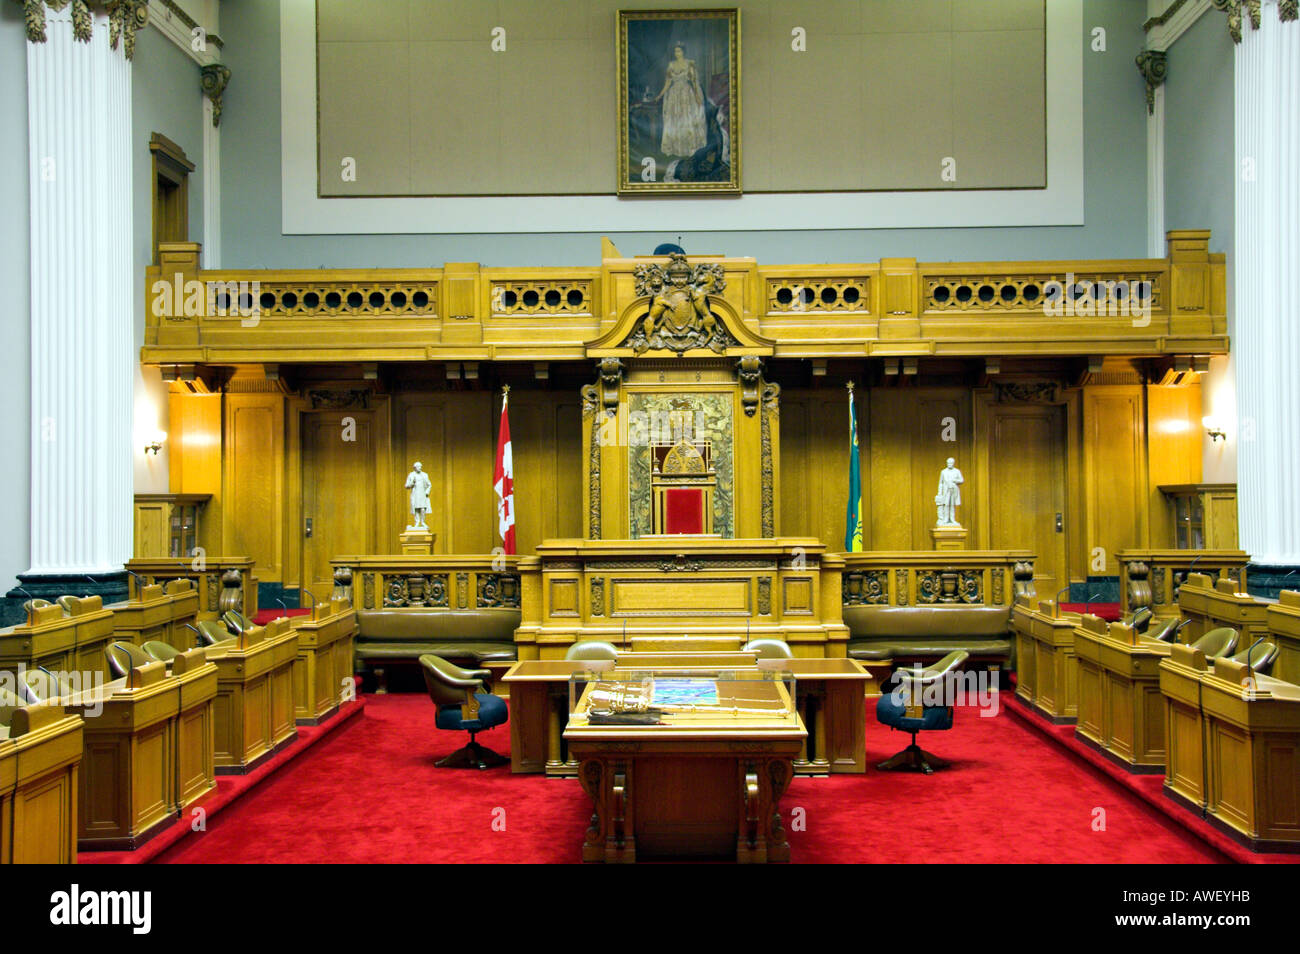 The Saskatchewan Provincial Legislative Chamber interior in Regina Saskakatchewan Canada Stock Photo